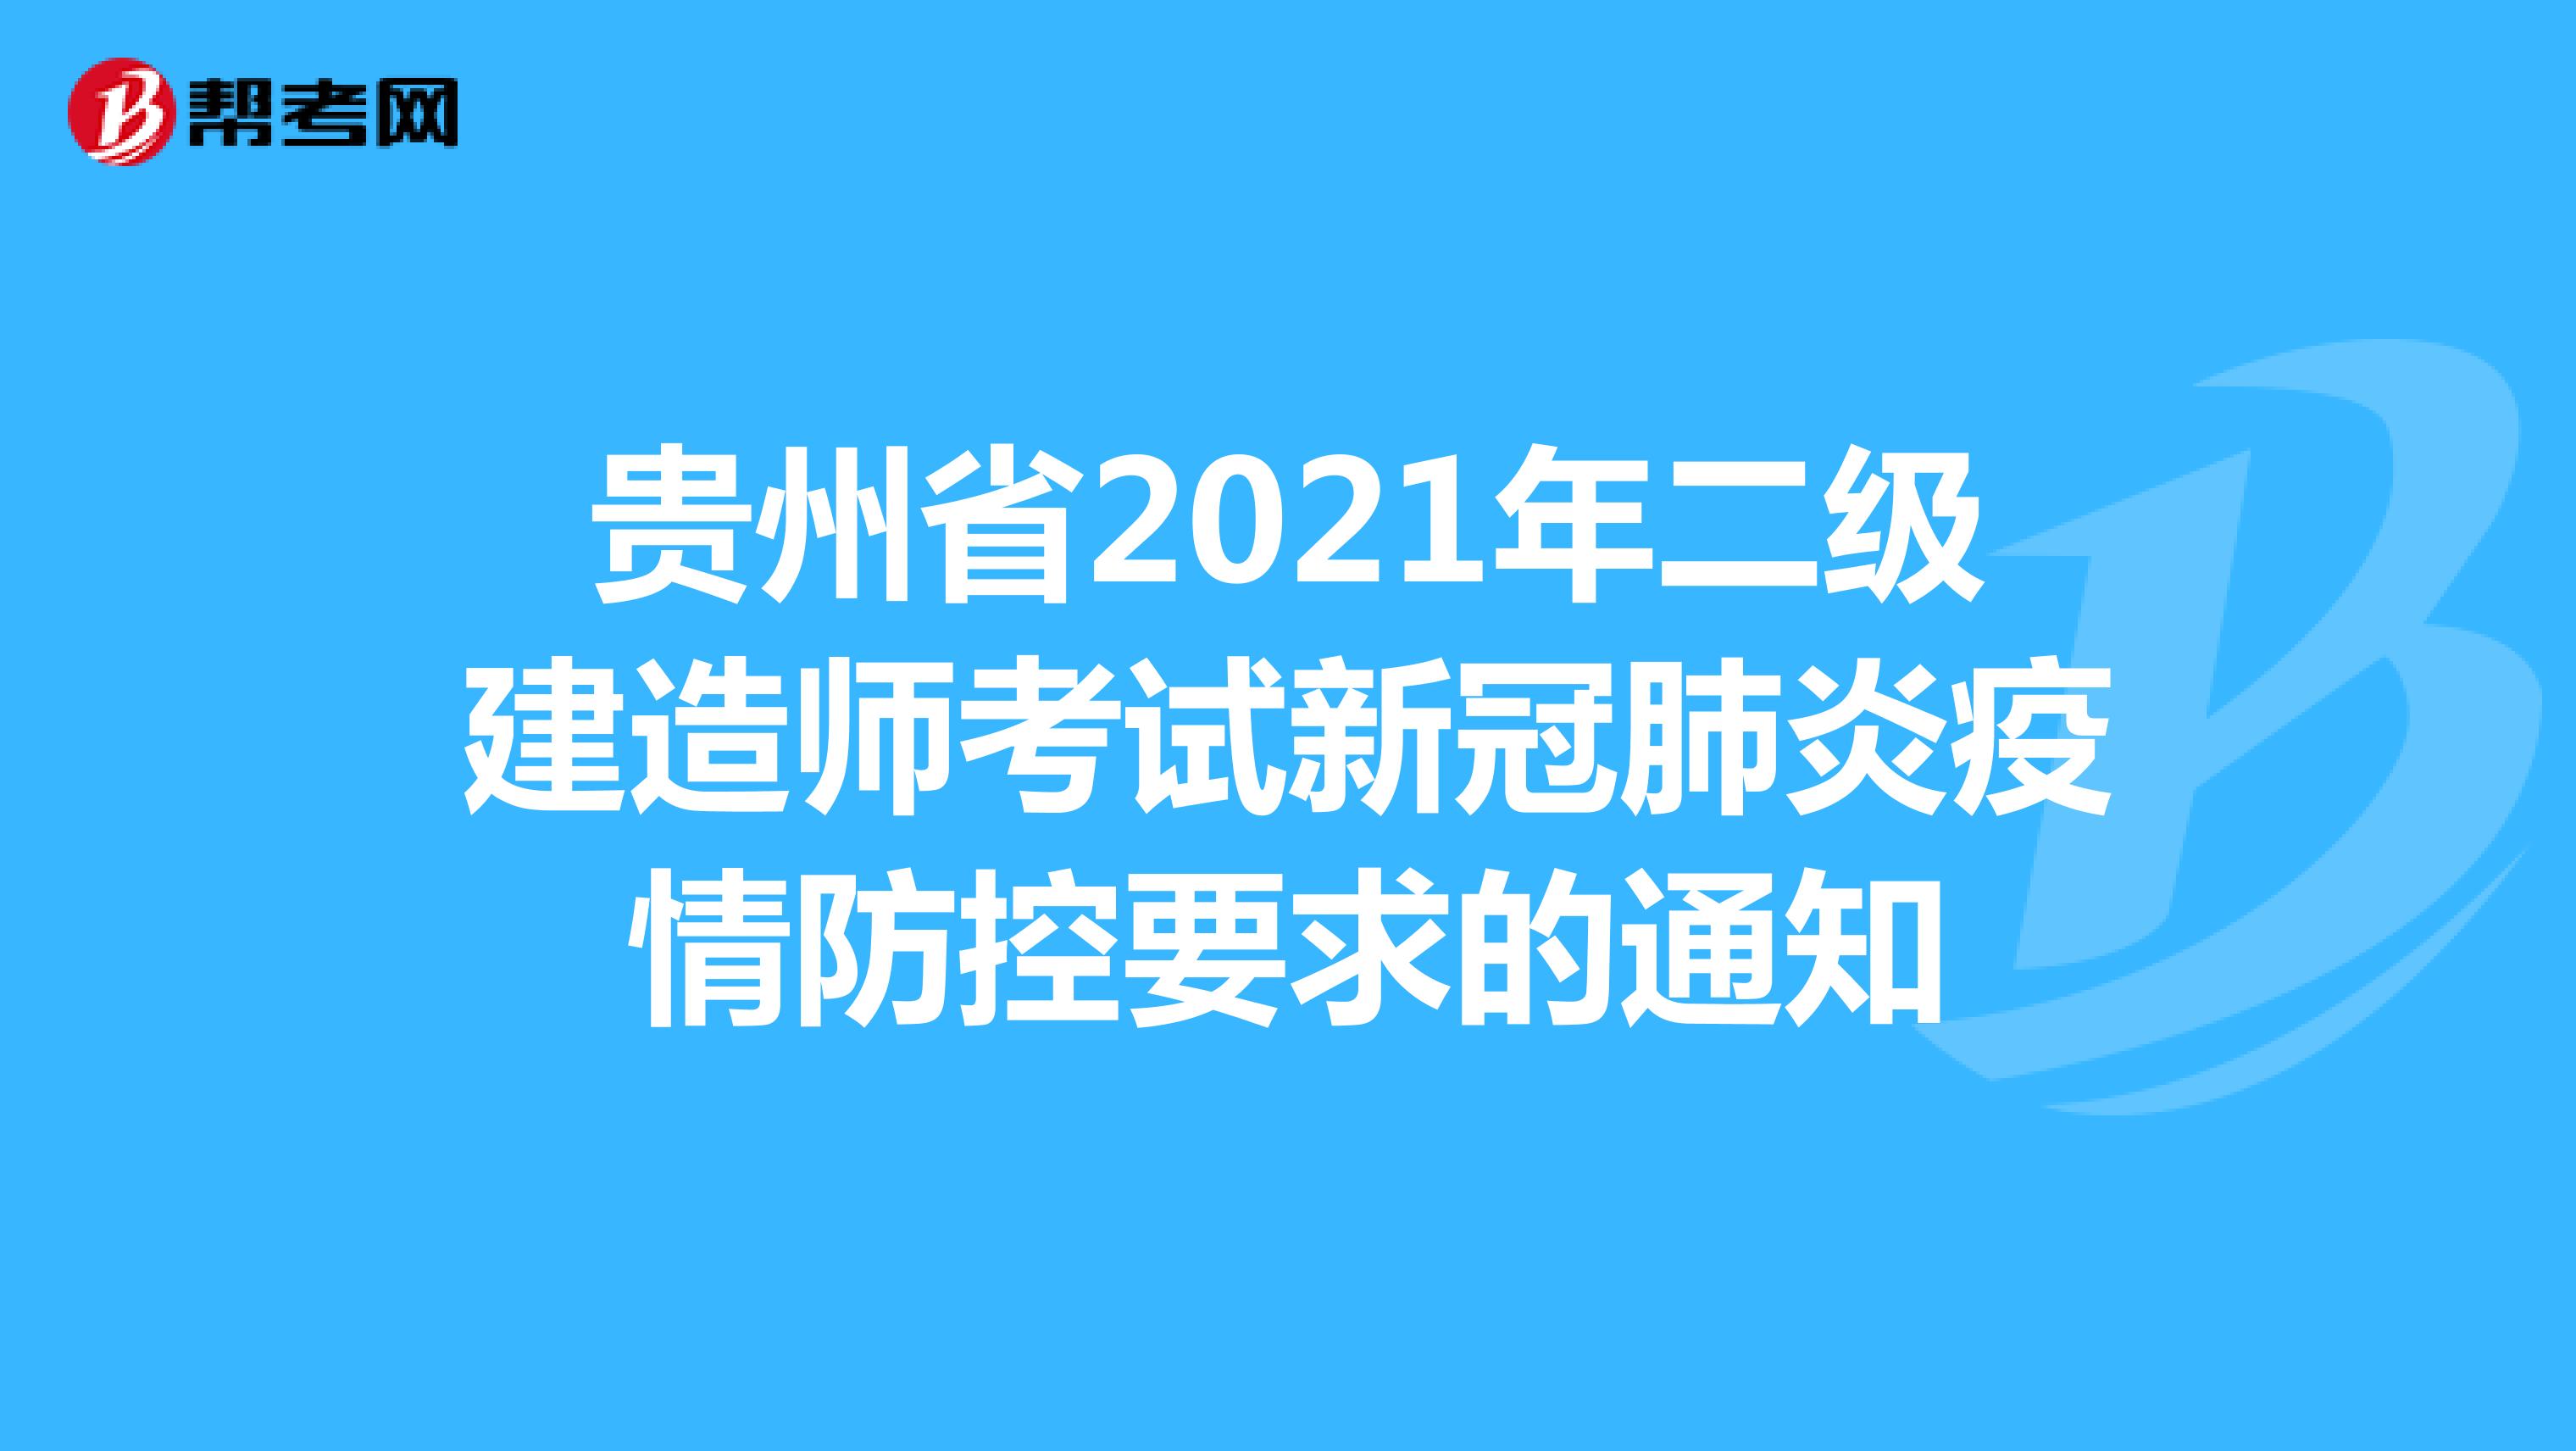 贵州省2021年二级建造师考试新冠肺炎疫情防控要求的通知